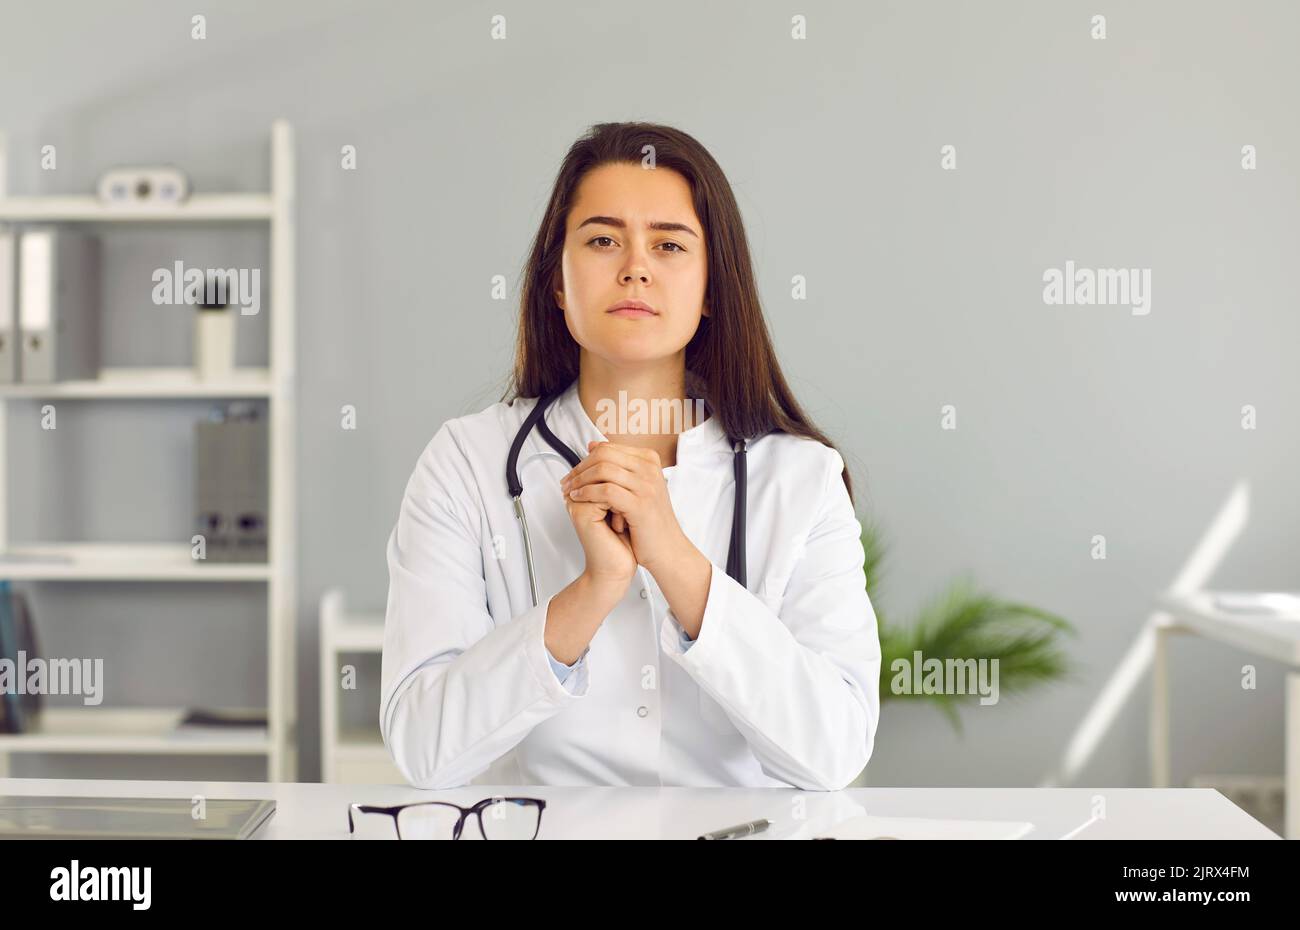 Porträt einer jungen Ärztin im weißen Mantel während der ärztlichen Konsultation per Videoanruf Stockfoto